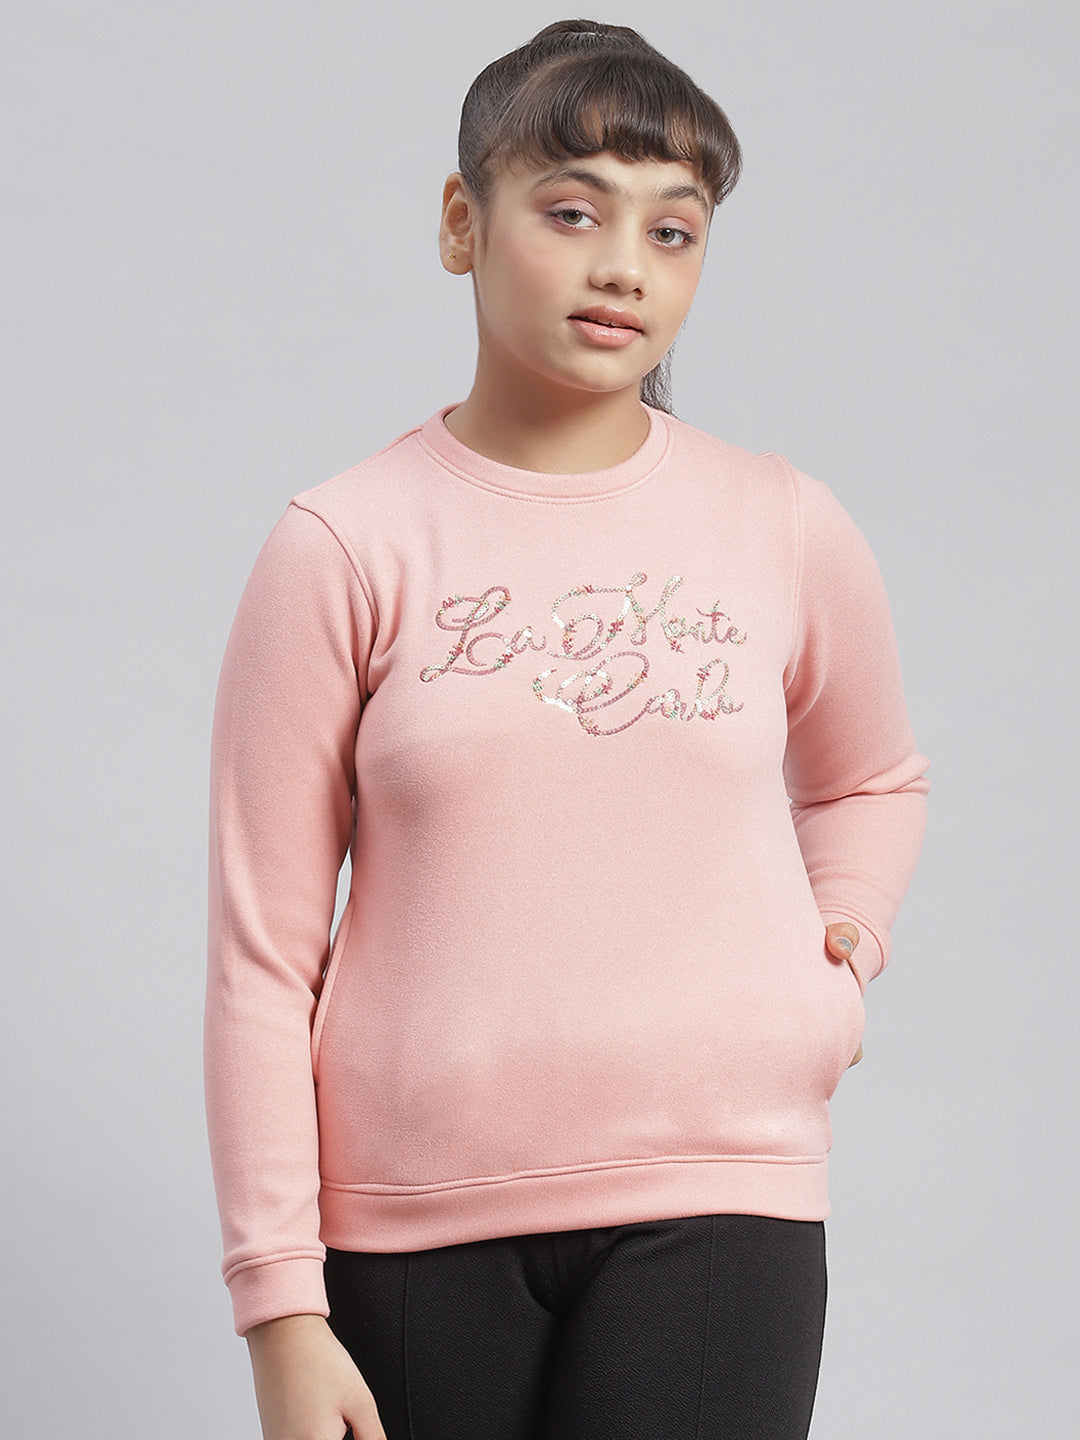 Girls Pink Embellished Round Neck Full Sleeve Sweatshirt